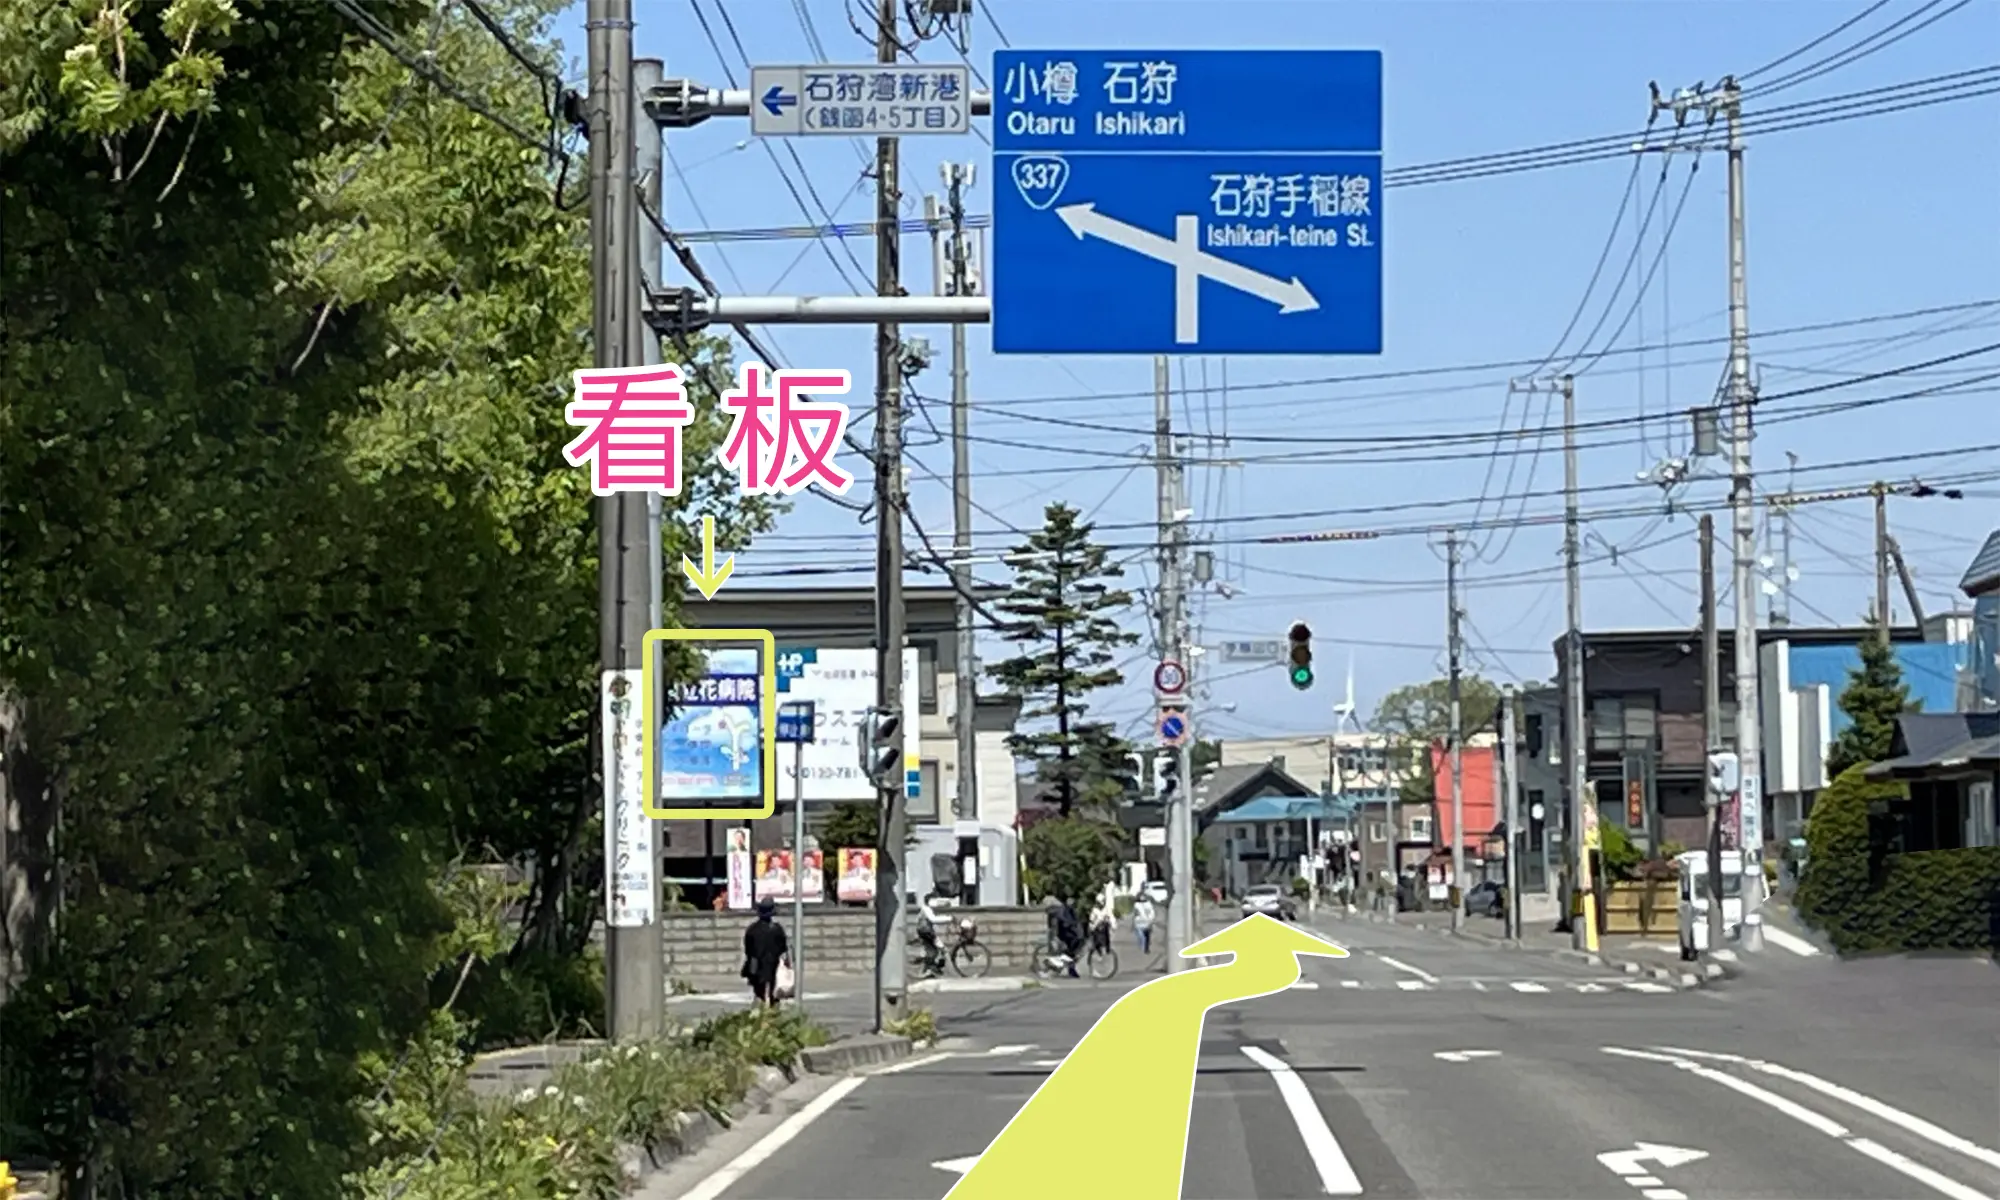 札幌立花病院までのルートガイドの写真です。